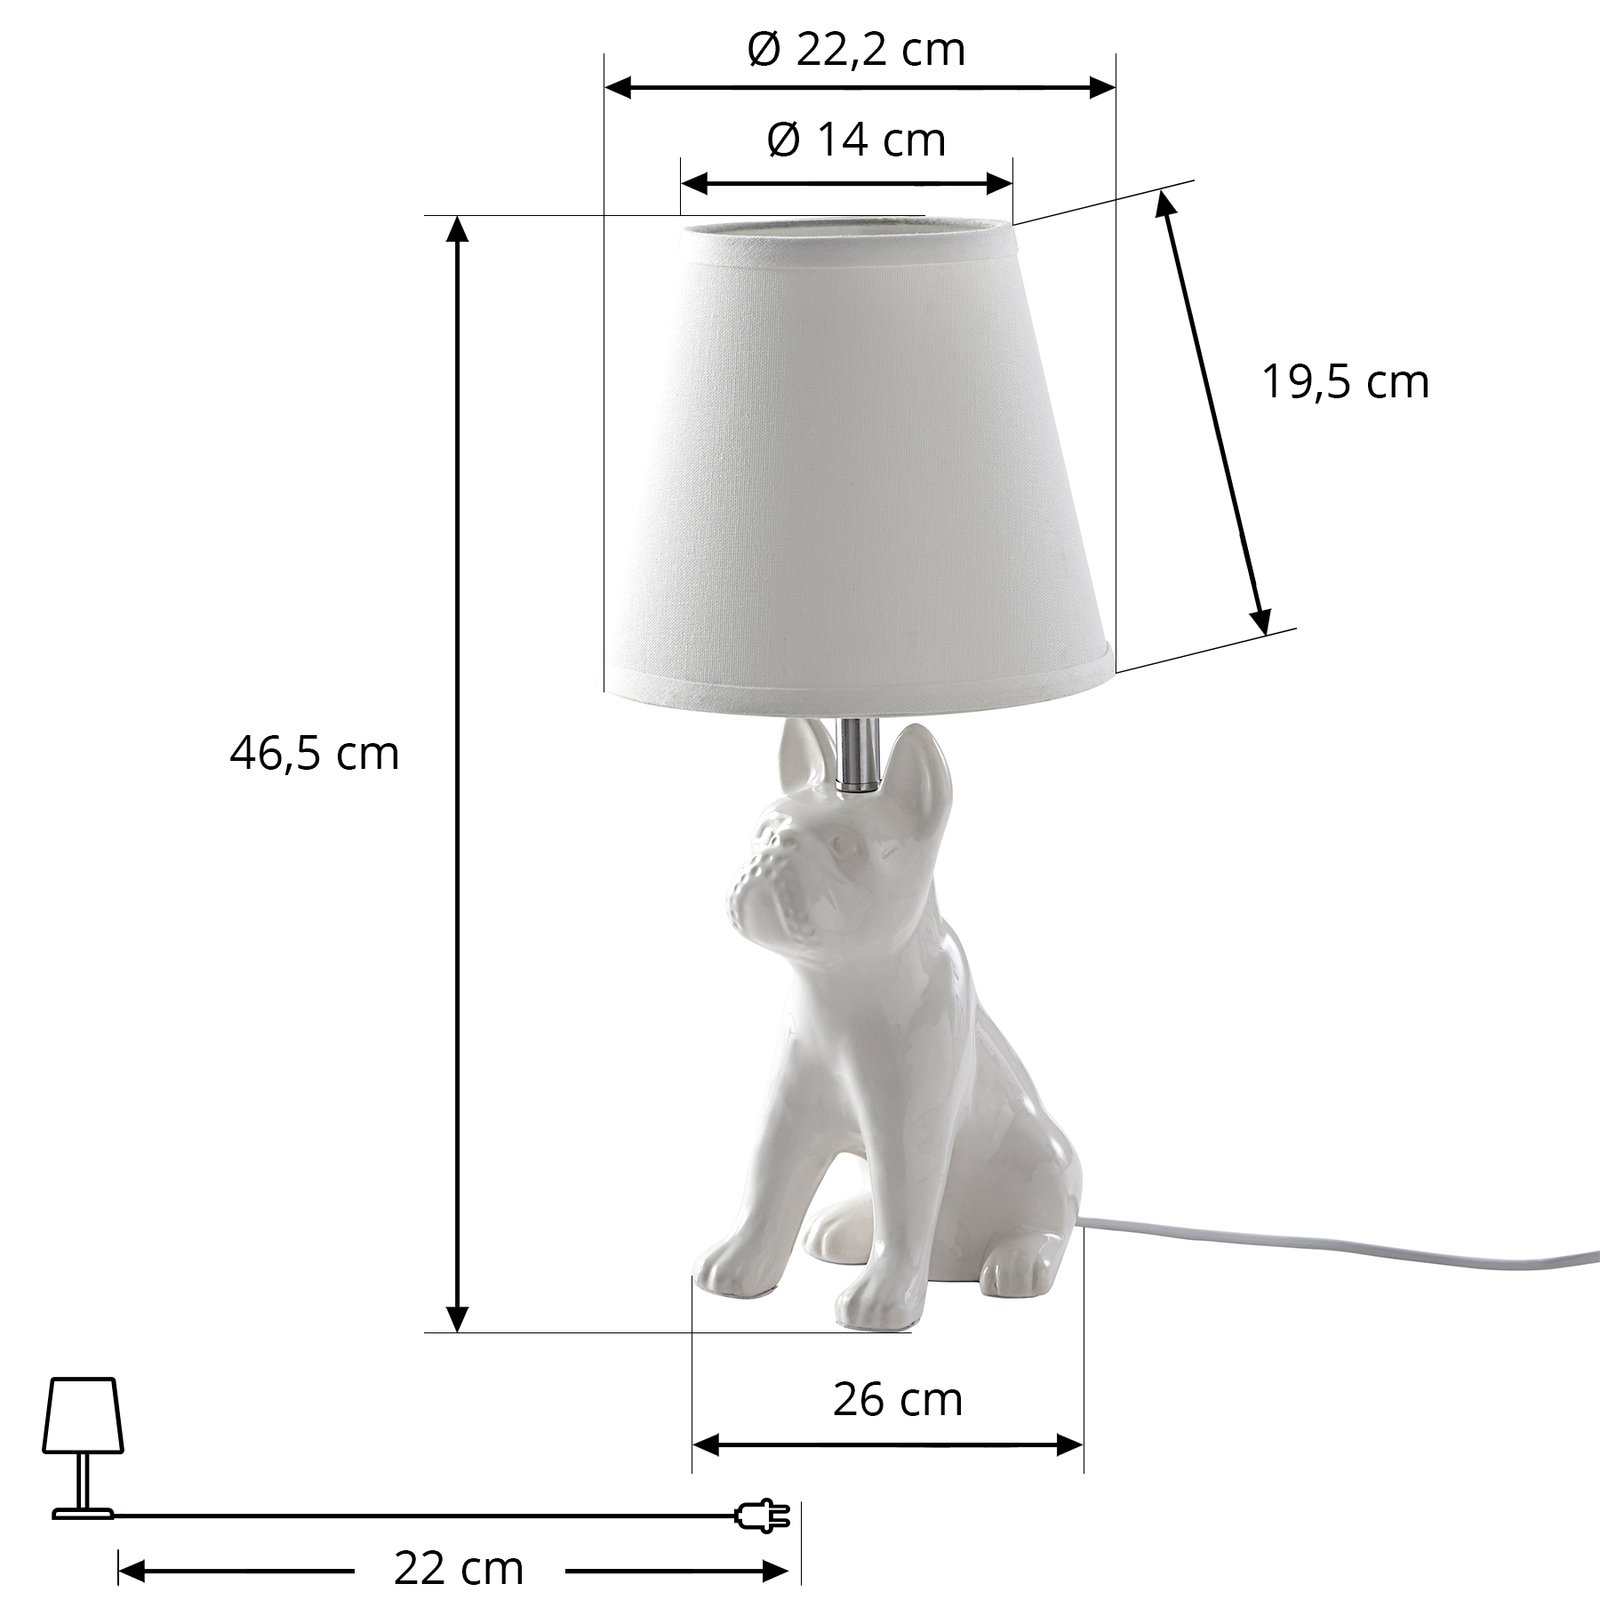 Lindby tafellamp Herry, wit, keramiek, hond, 46,5 cm hoog